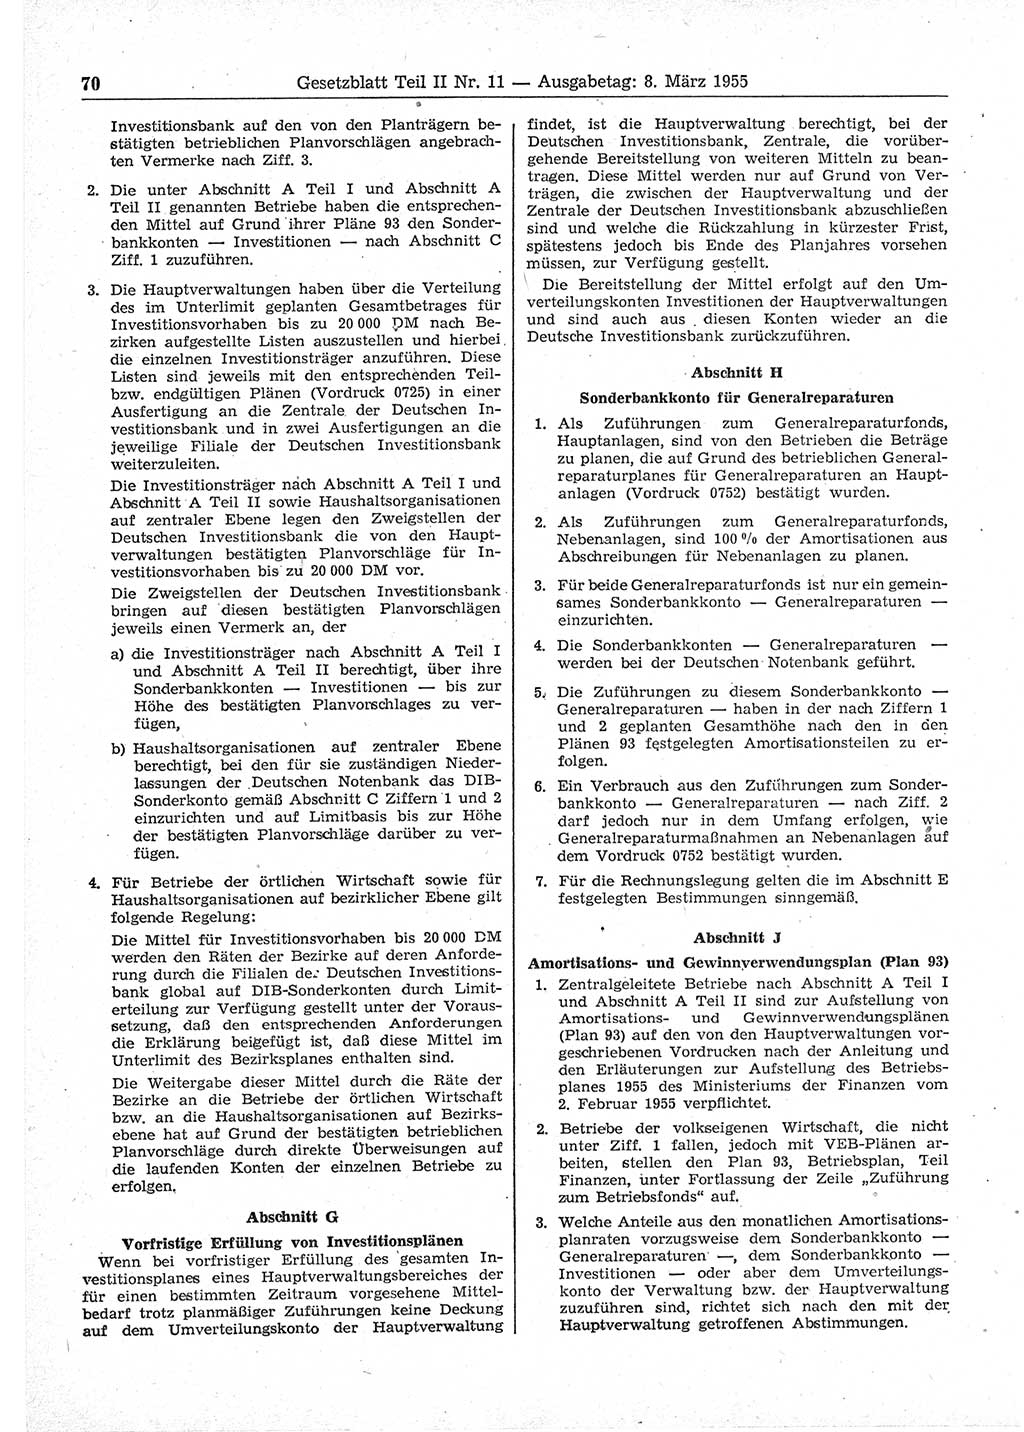 Gesetzblatt (GBl.) der Deutschen Demokratischen Republik (DDR) Teil ⅠⅠ 1955, Seite 70 (GBl. DDR ⅠⅠ 1955, S. 70)